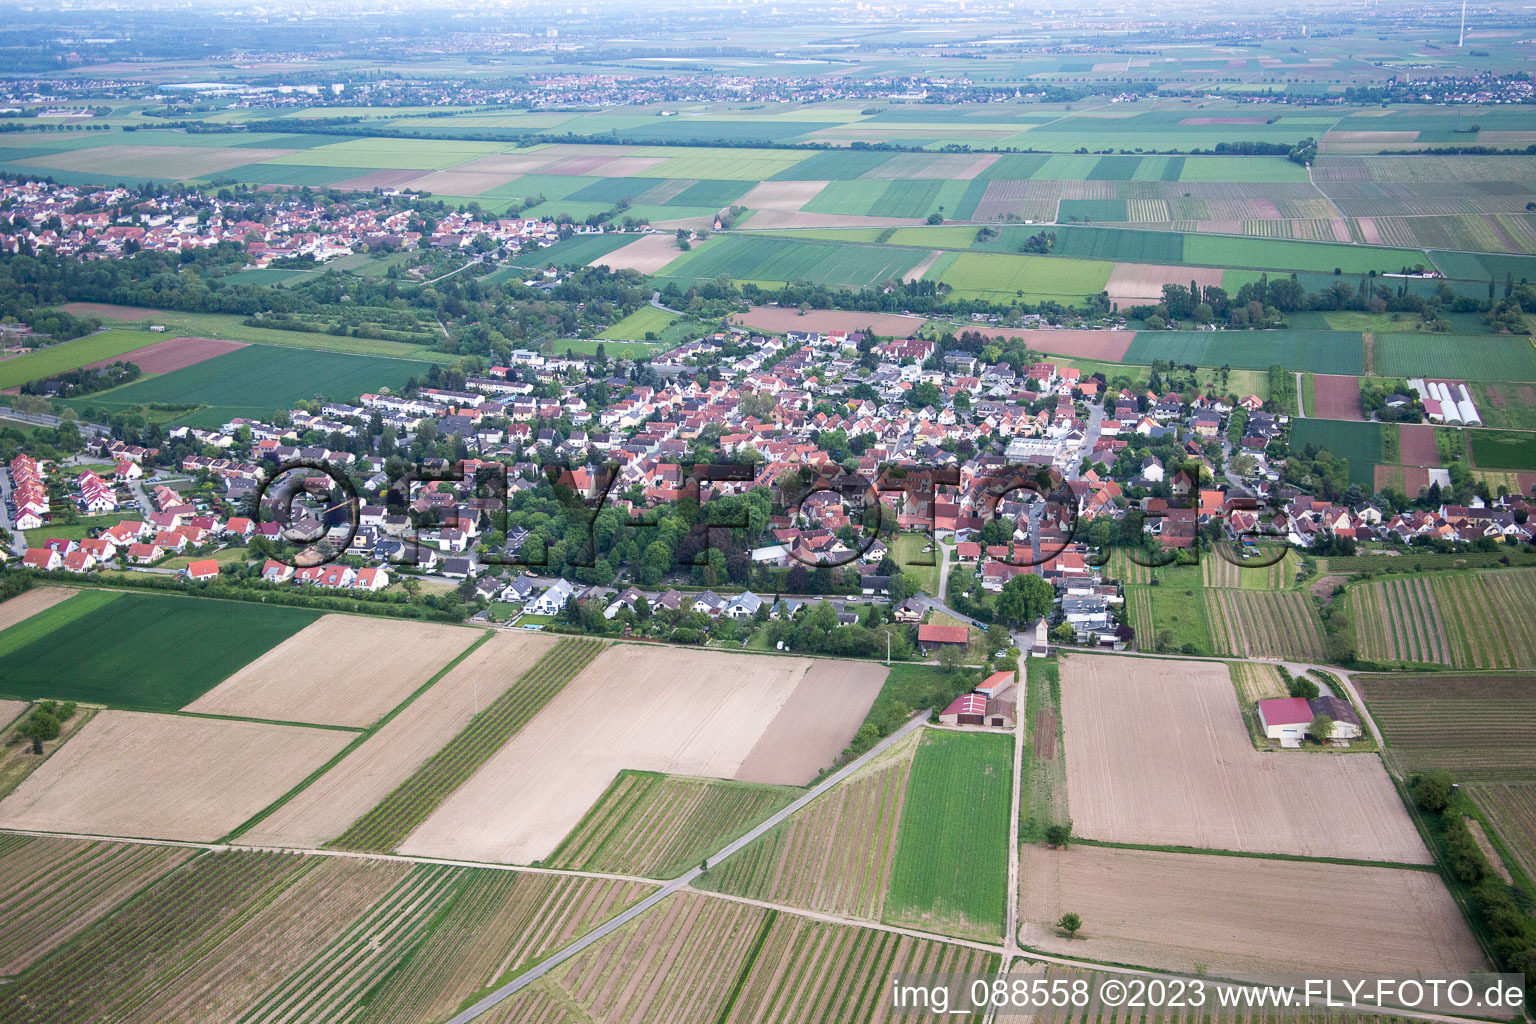 Luftbild von Ortsteil Leiselheim in Worms im Bundesland Rheinland-Pfalz, Deutschland